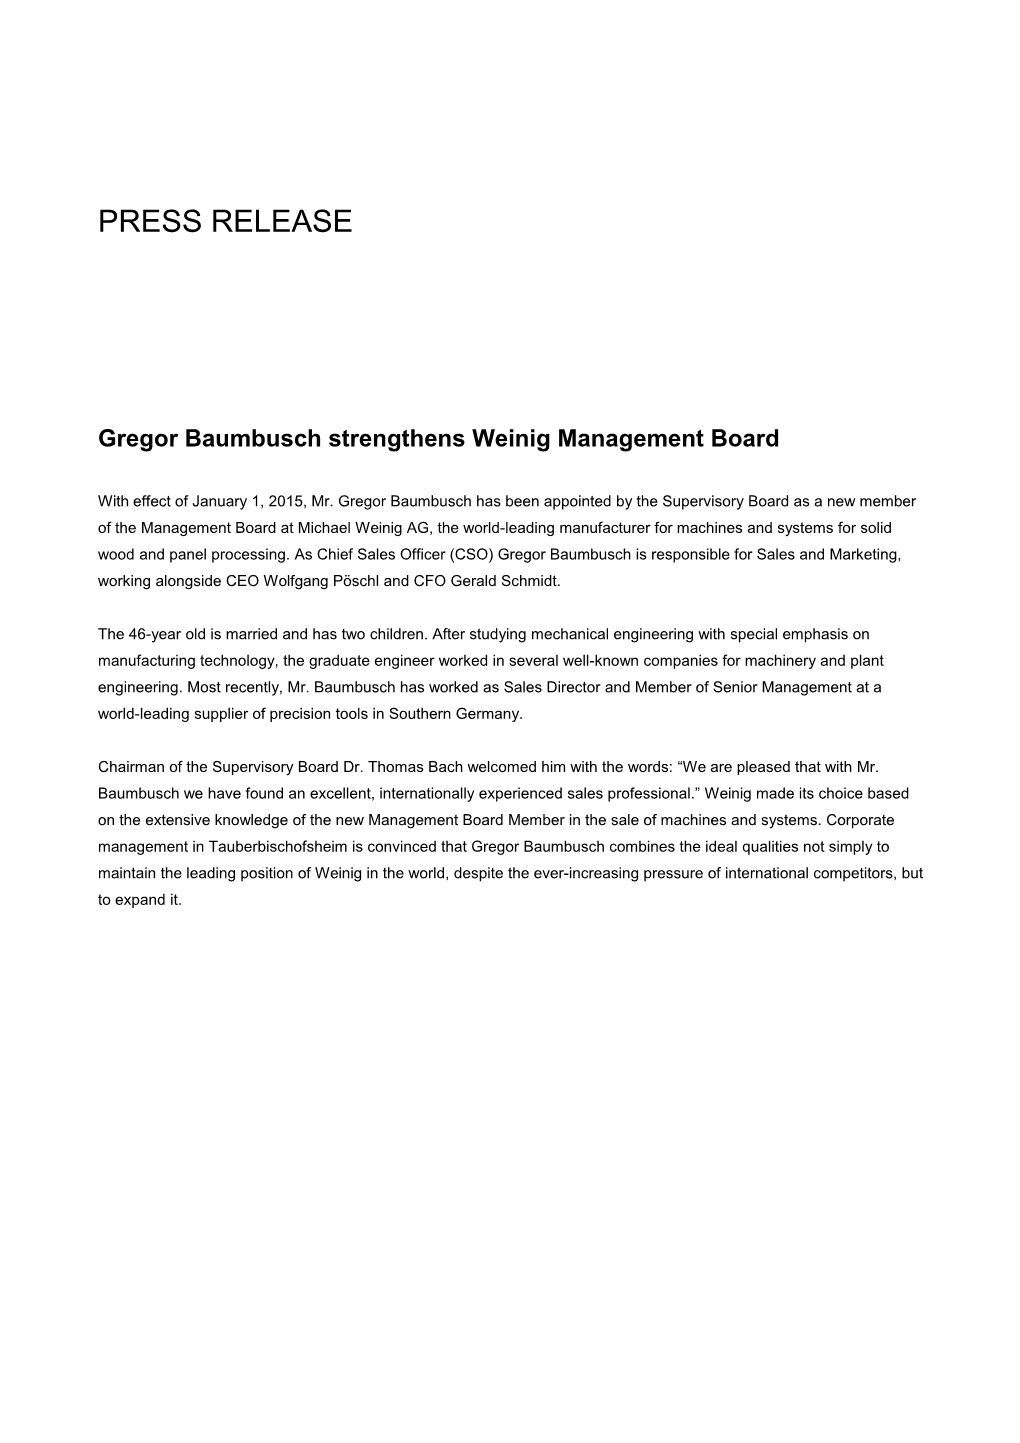 Gregor Baumbusch Strengthens Weinig Management Board